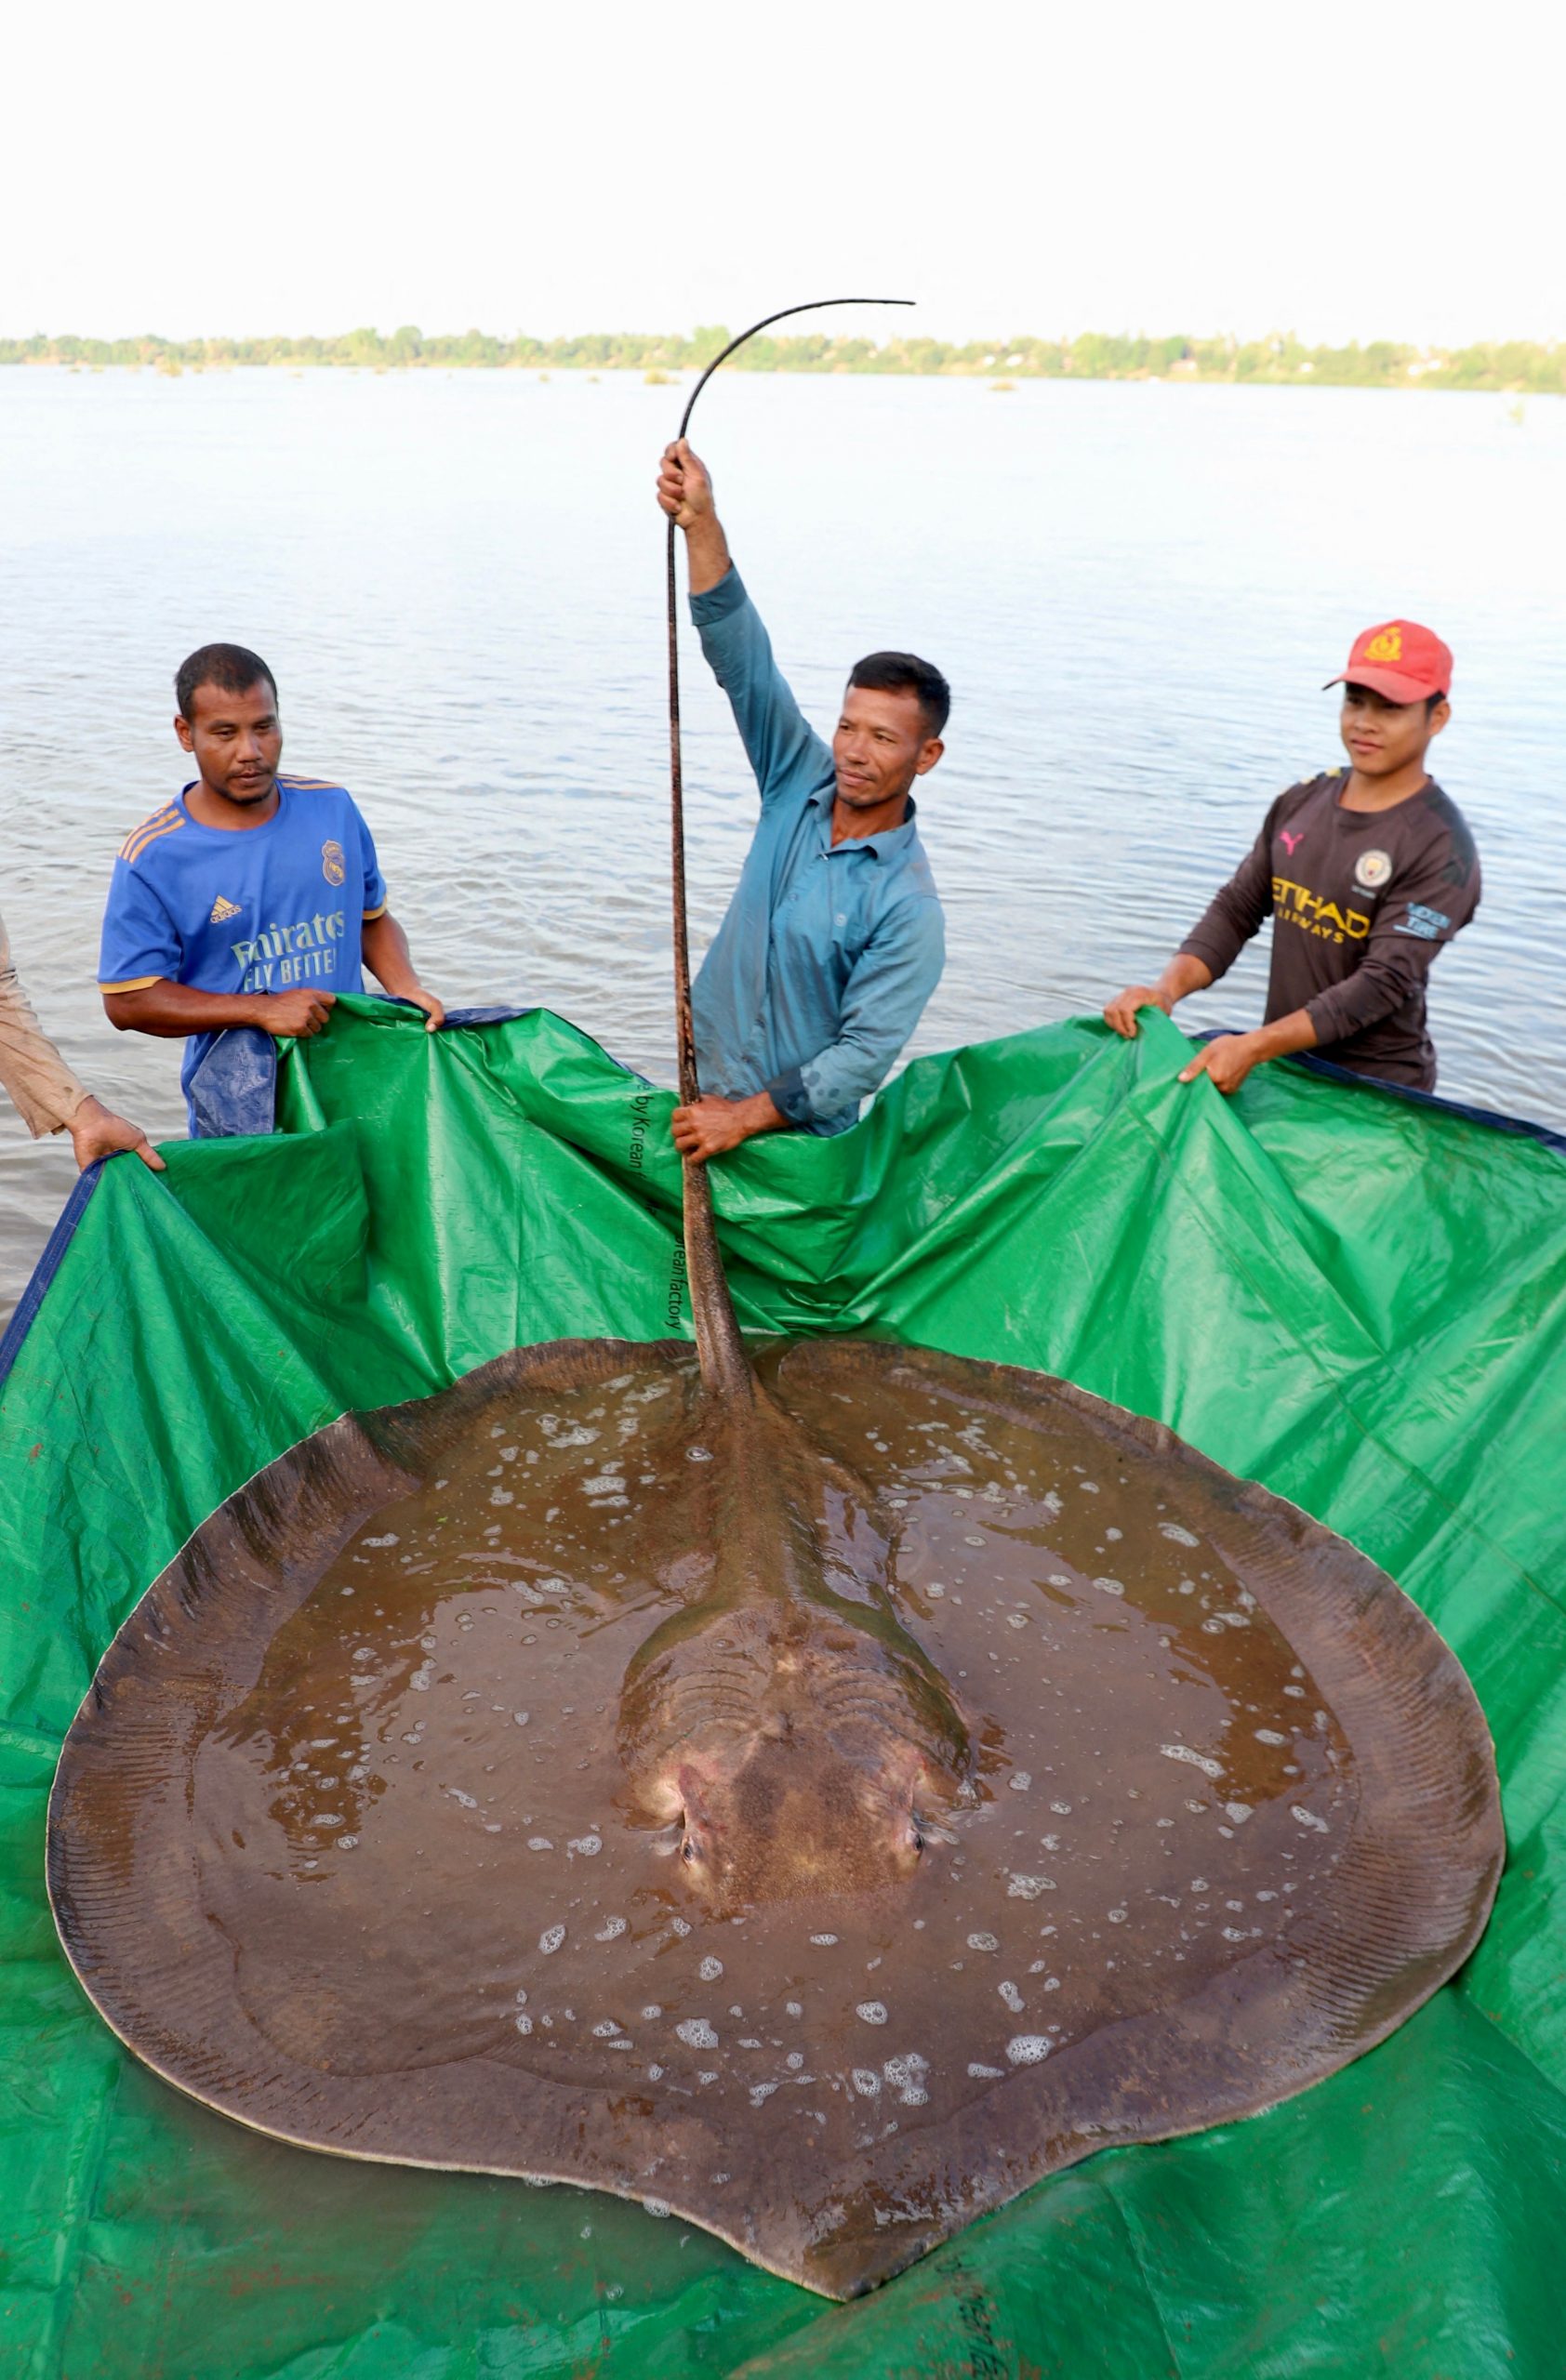 重达180公斤 柬埔寨渔民意外捕捉巨型濒危魔鬼鱼